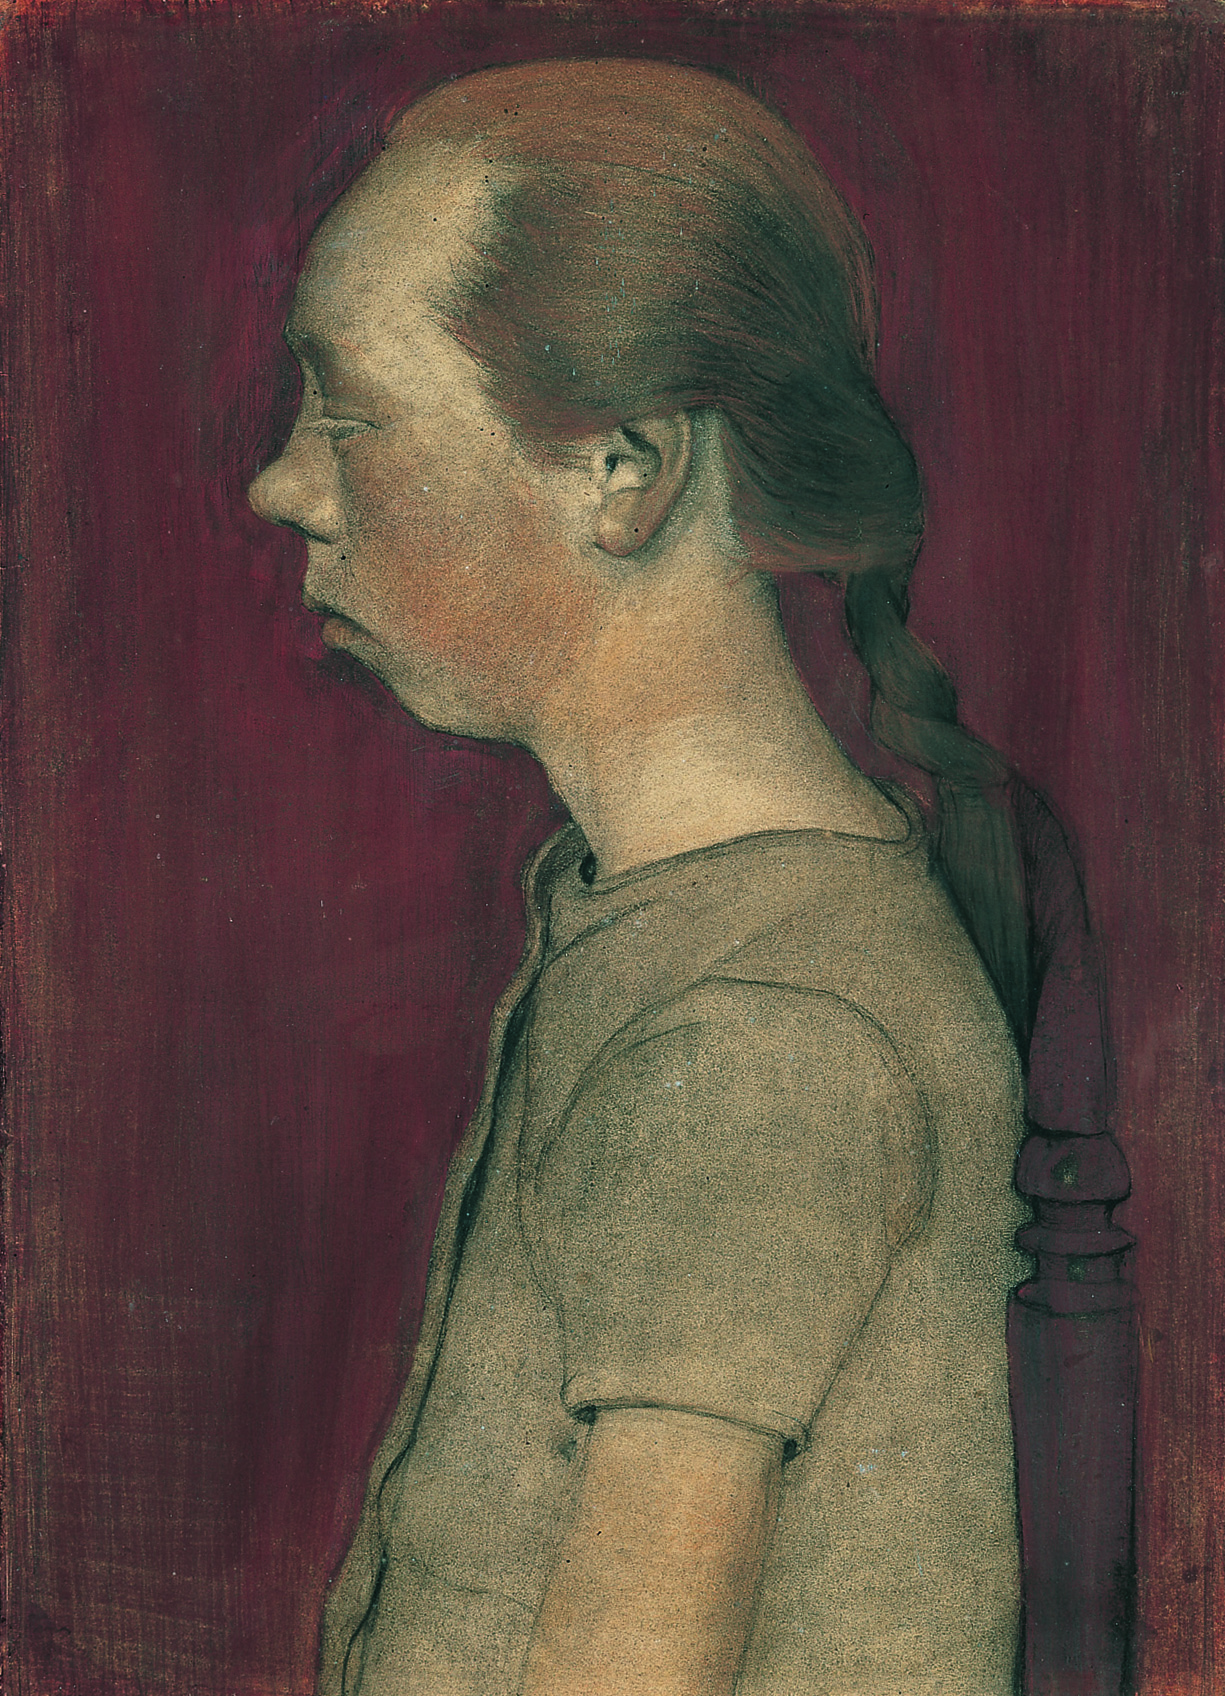 Paula Modersohn-Becker: Sitzendes Bauernmädchen im Profil nach link, 1899.